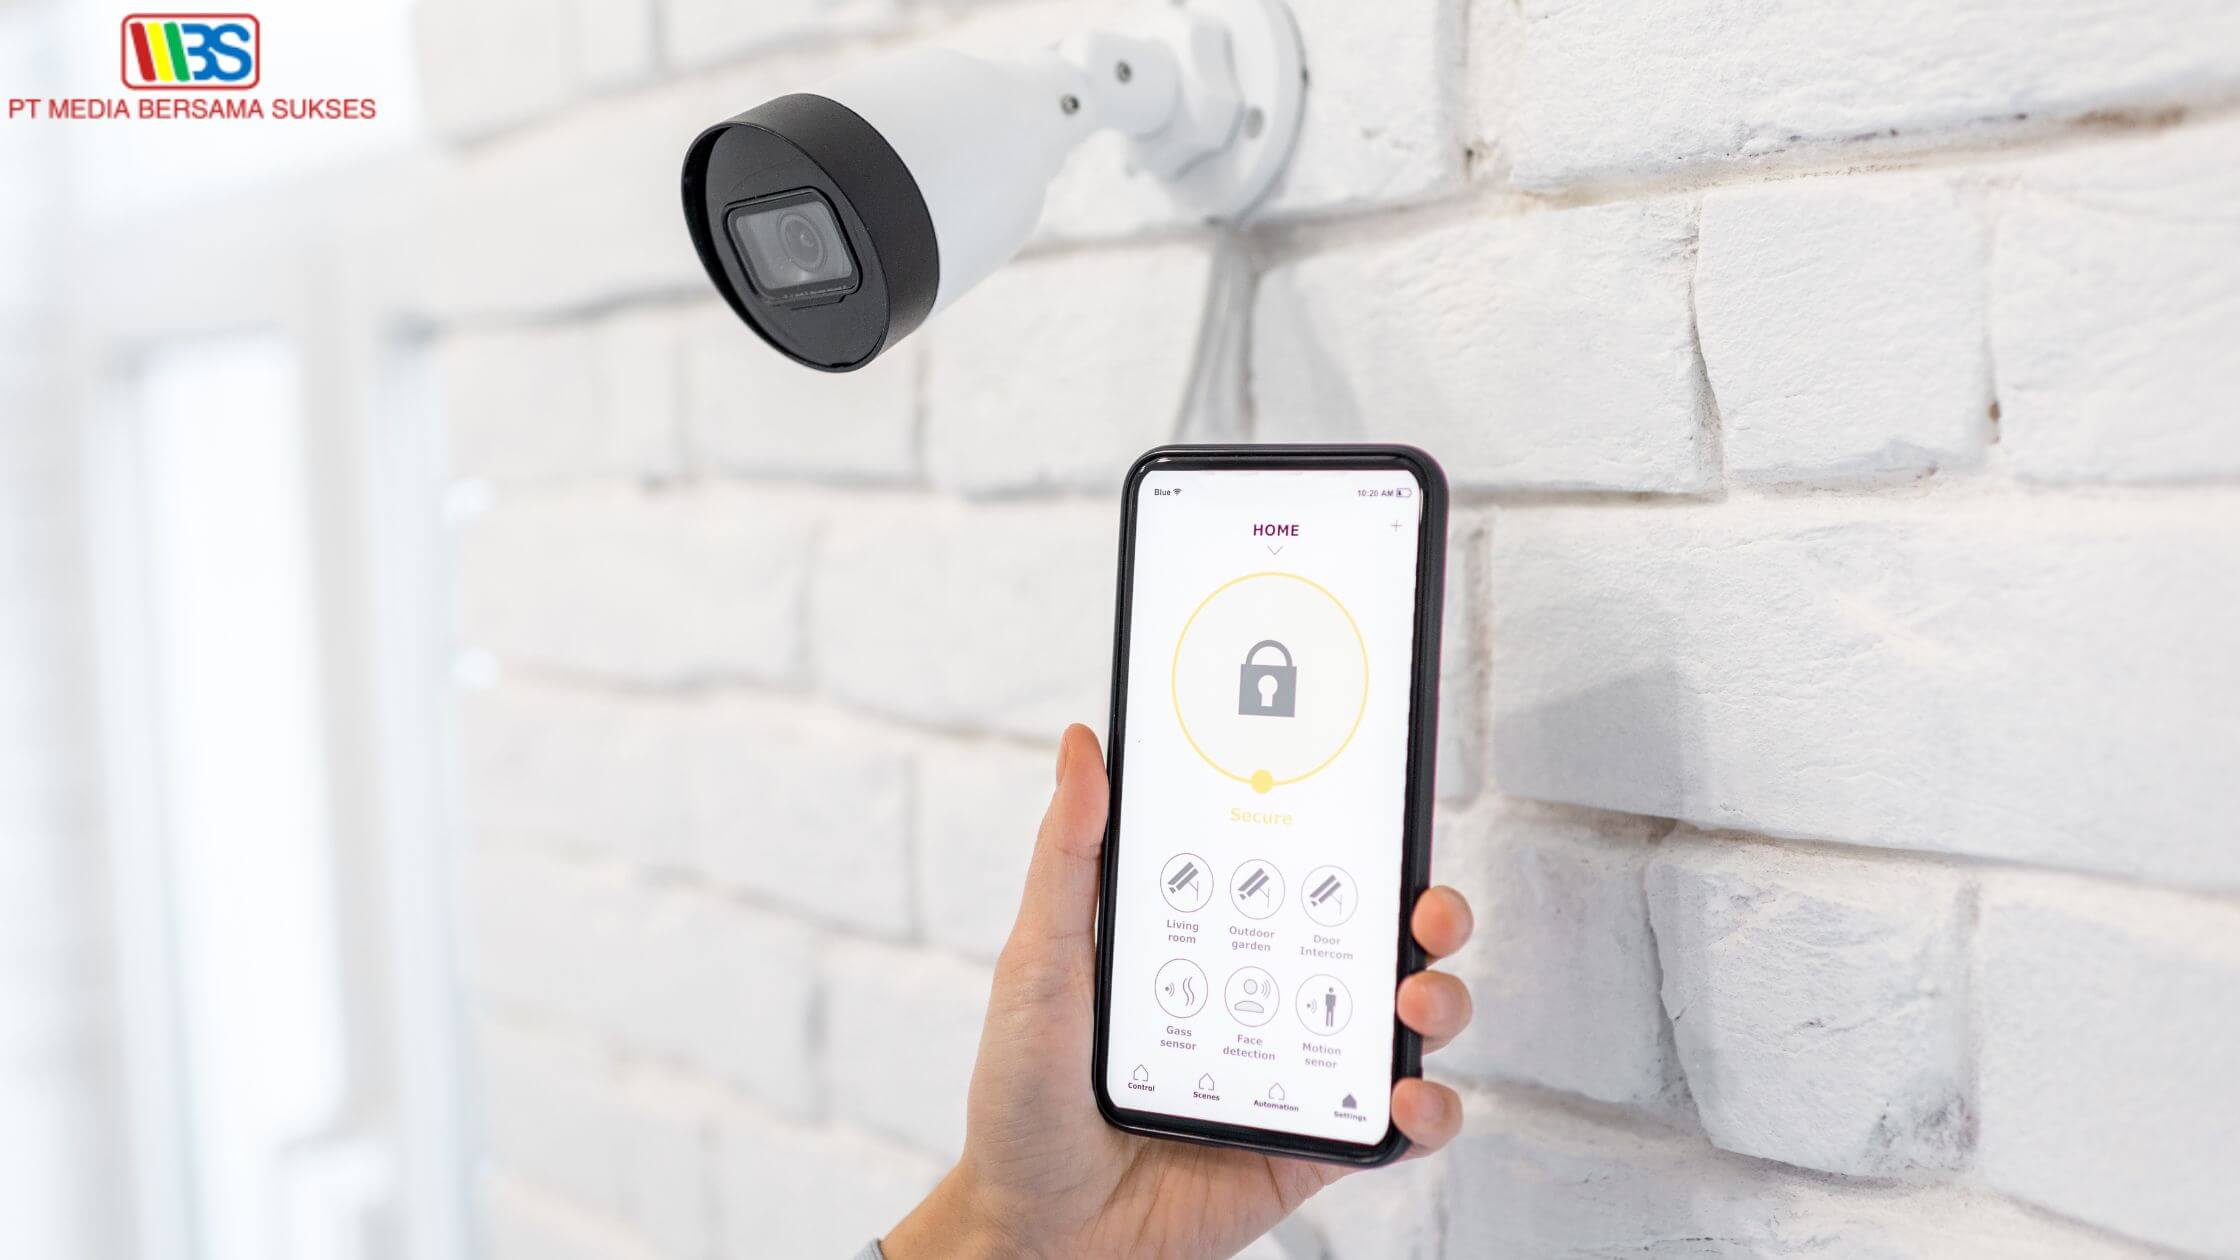 Mengenali Fitur Alarm CCTV untuk Meningkatkan Keamanan Properti